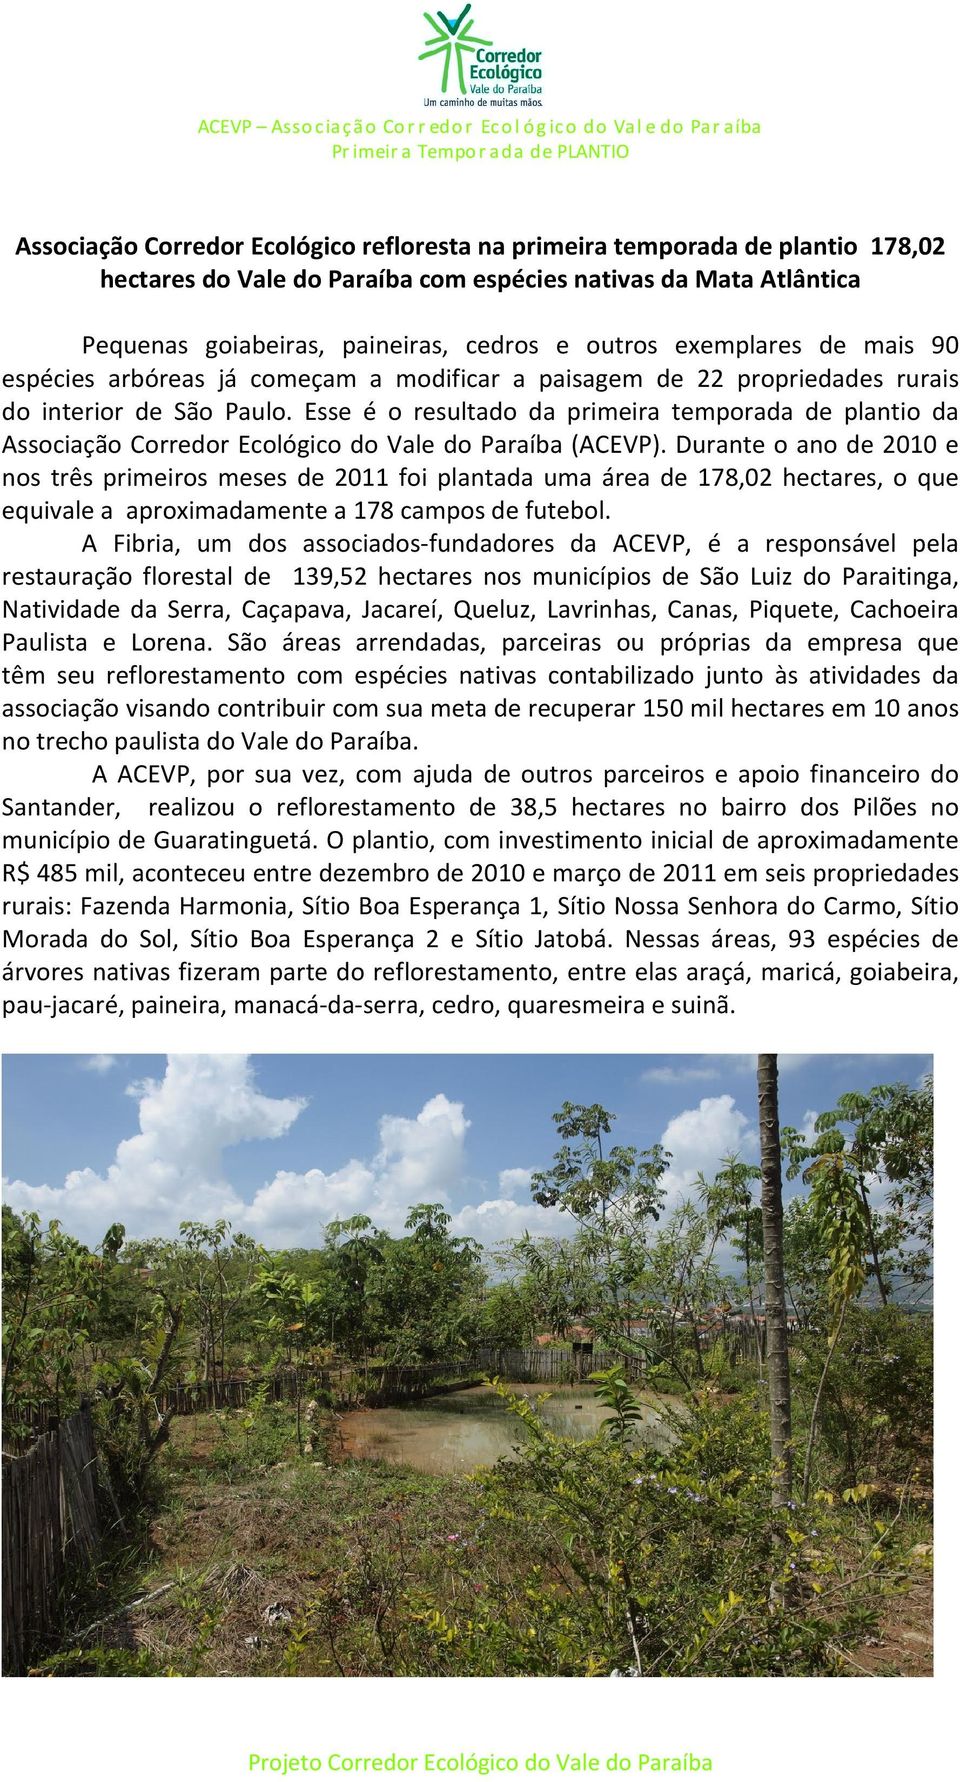 Esse é o resultado da primeira temporada de plantio da Associação Corredor Ecológico do Vale do Paraíba (ACEVP).